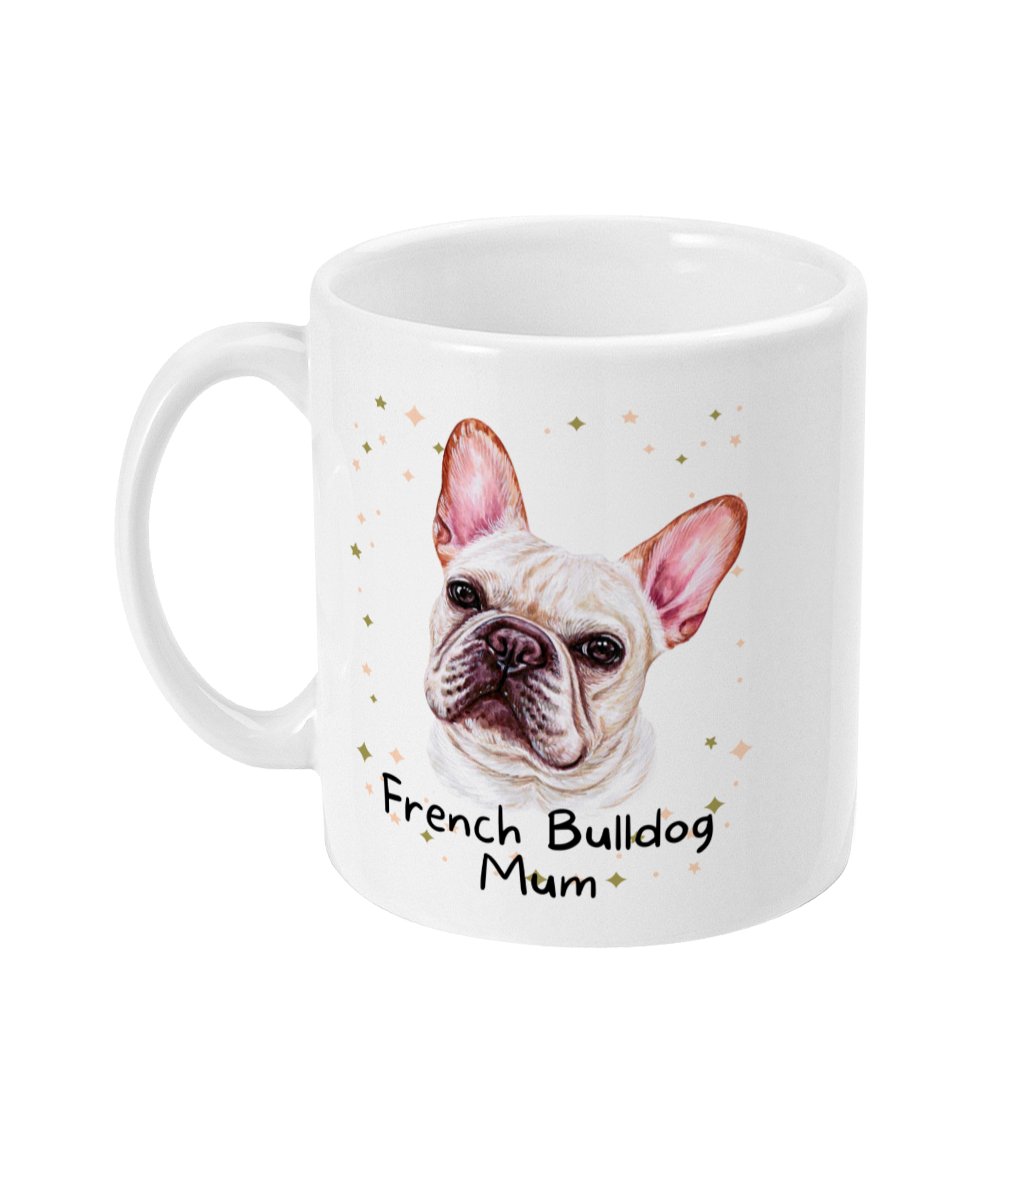 Dog Breed Mum Mug Ceramic 11oz - Dog Mum Gift - Sweetie